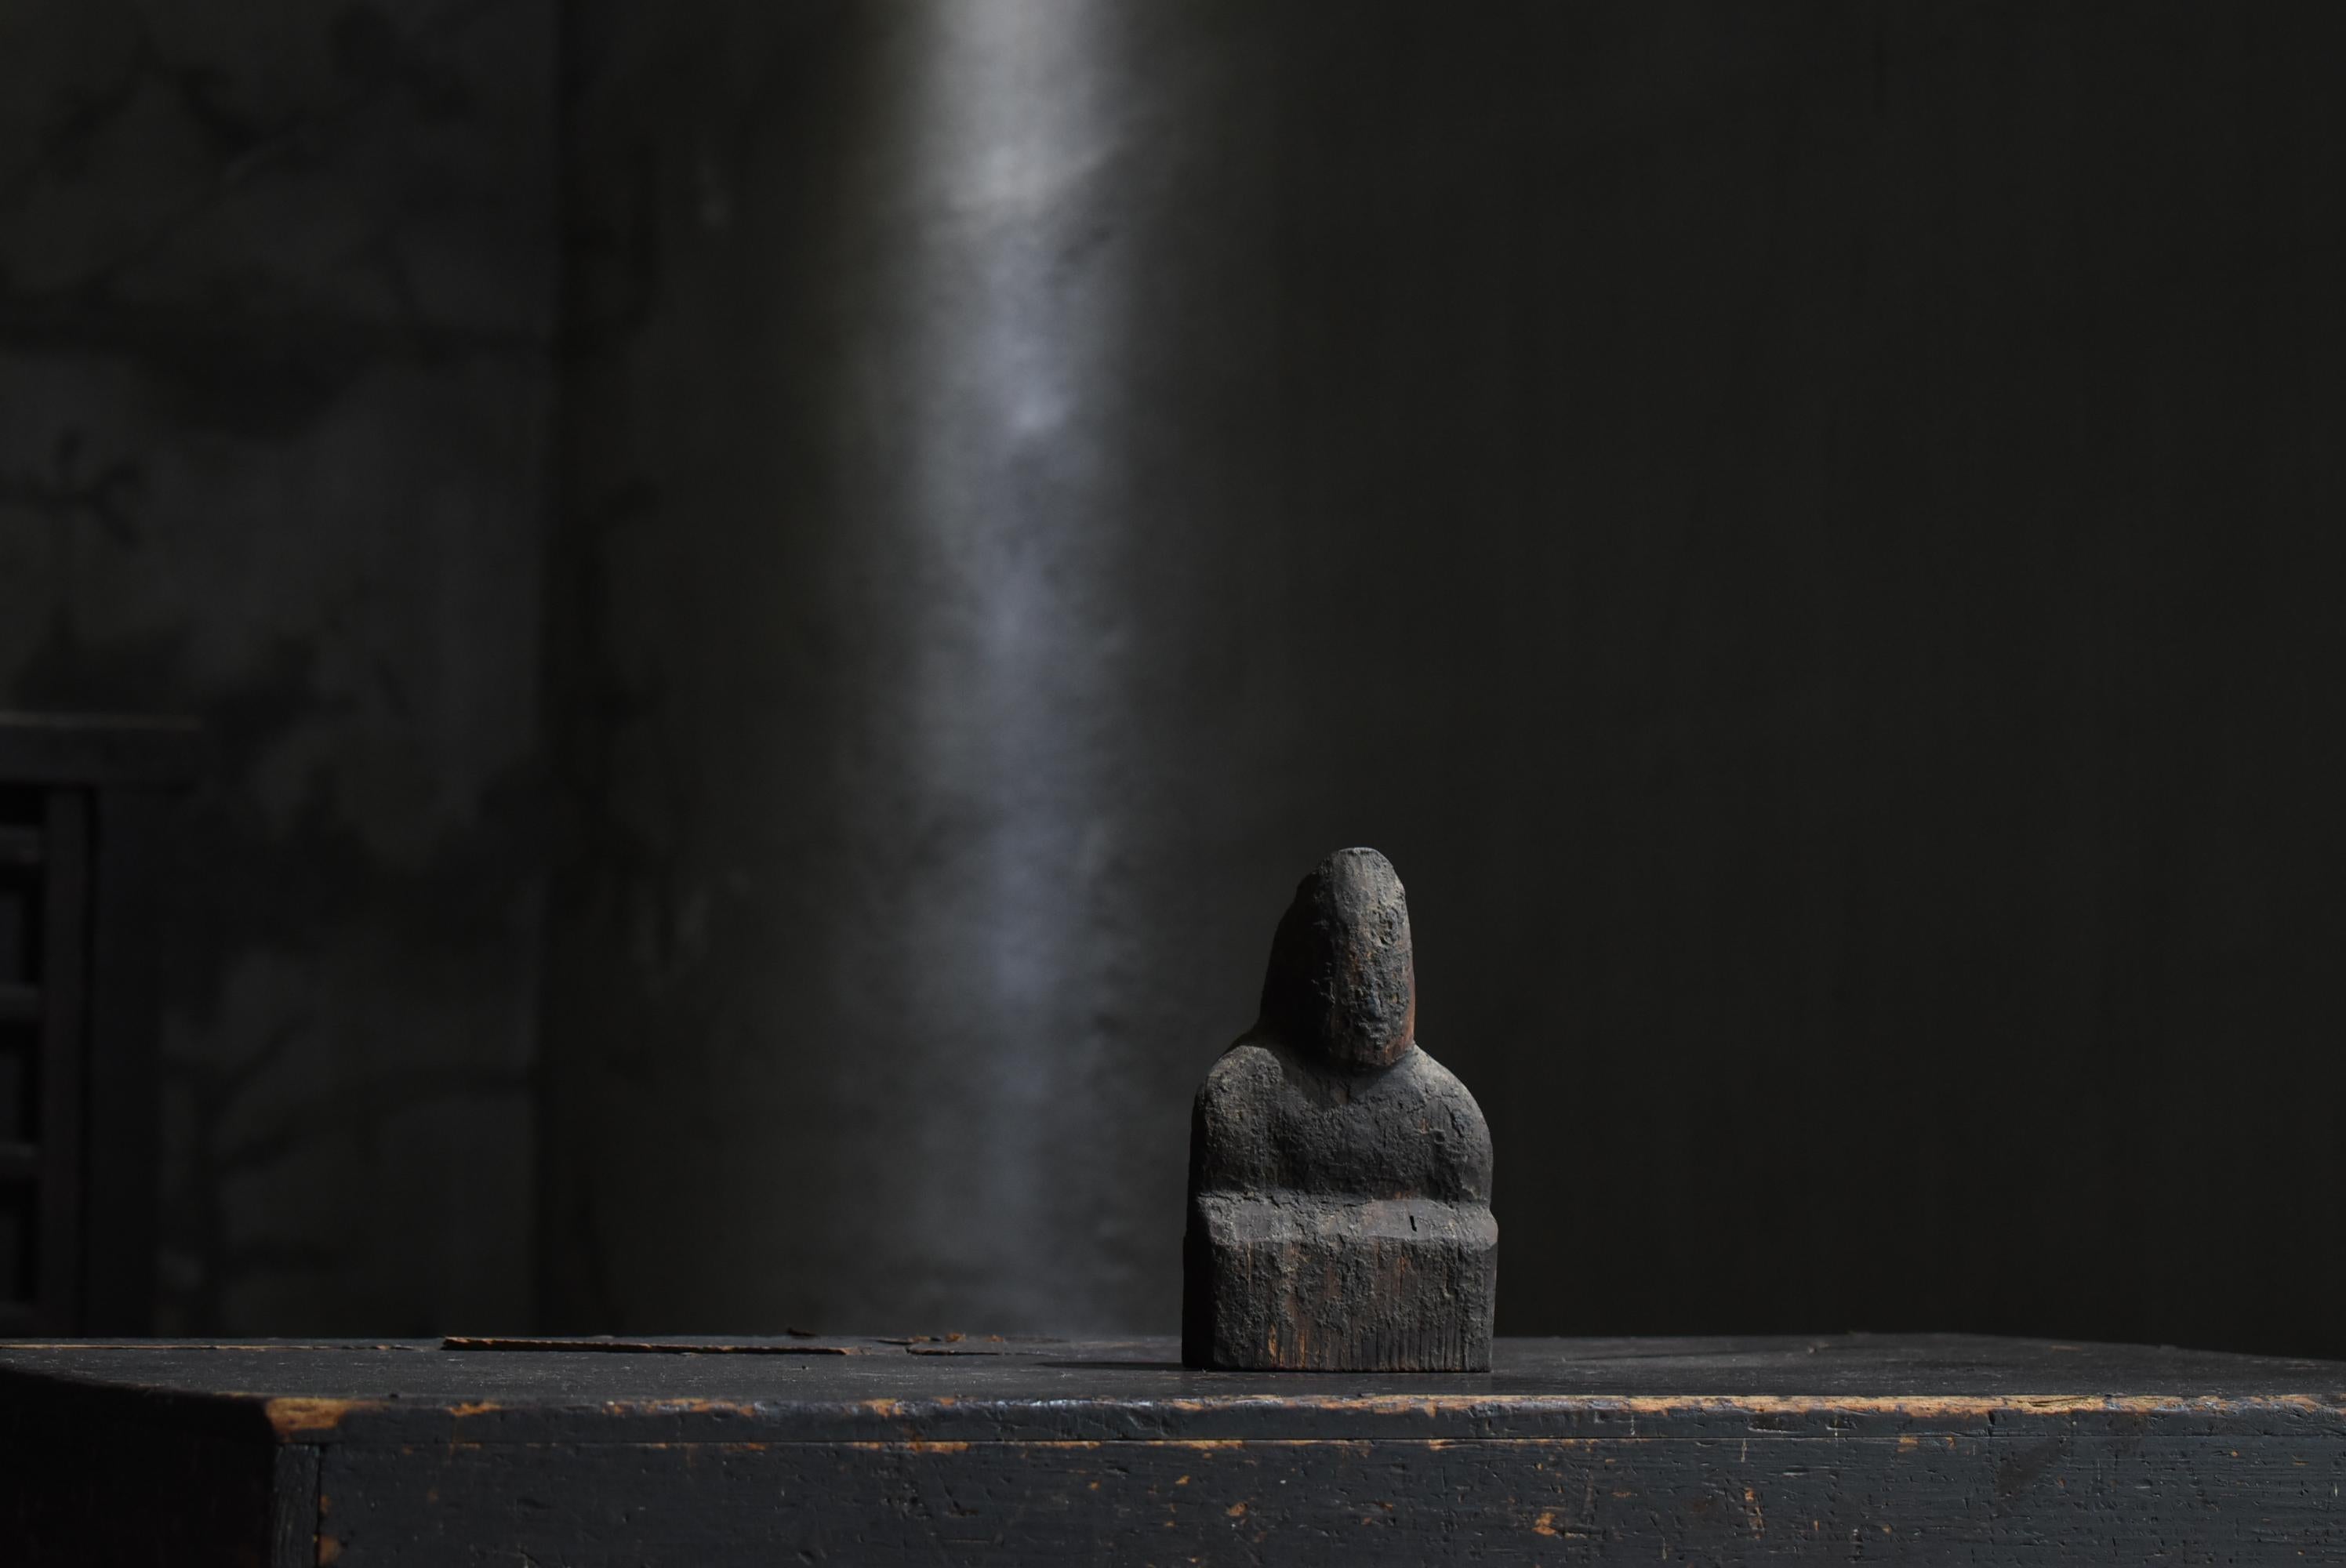 Il s'agit d'une très ancienne sculpture japonaise en bois représentant une divinité masculine.
Il s'agit d'une sculpture sur bois du début de la période Edo. (années 1600-1700)
Il a été chéri comme un dieu pour le peuple.

Sculpté dans du bois de